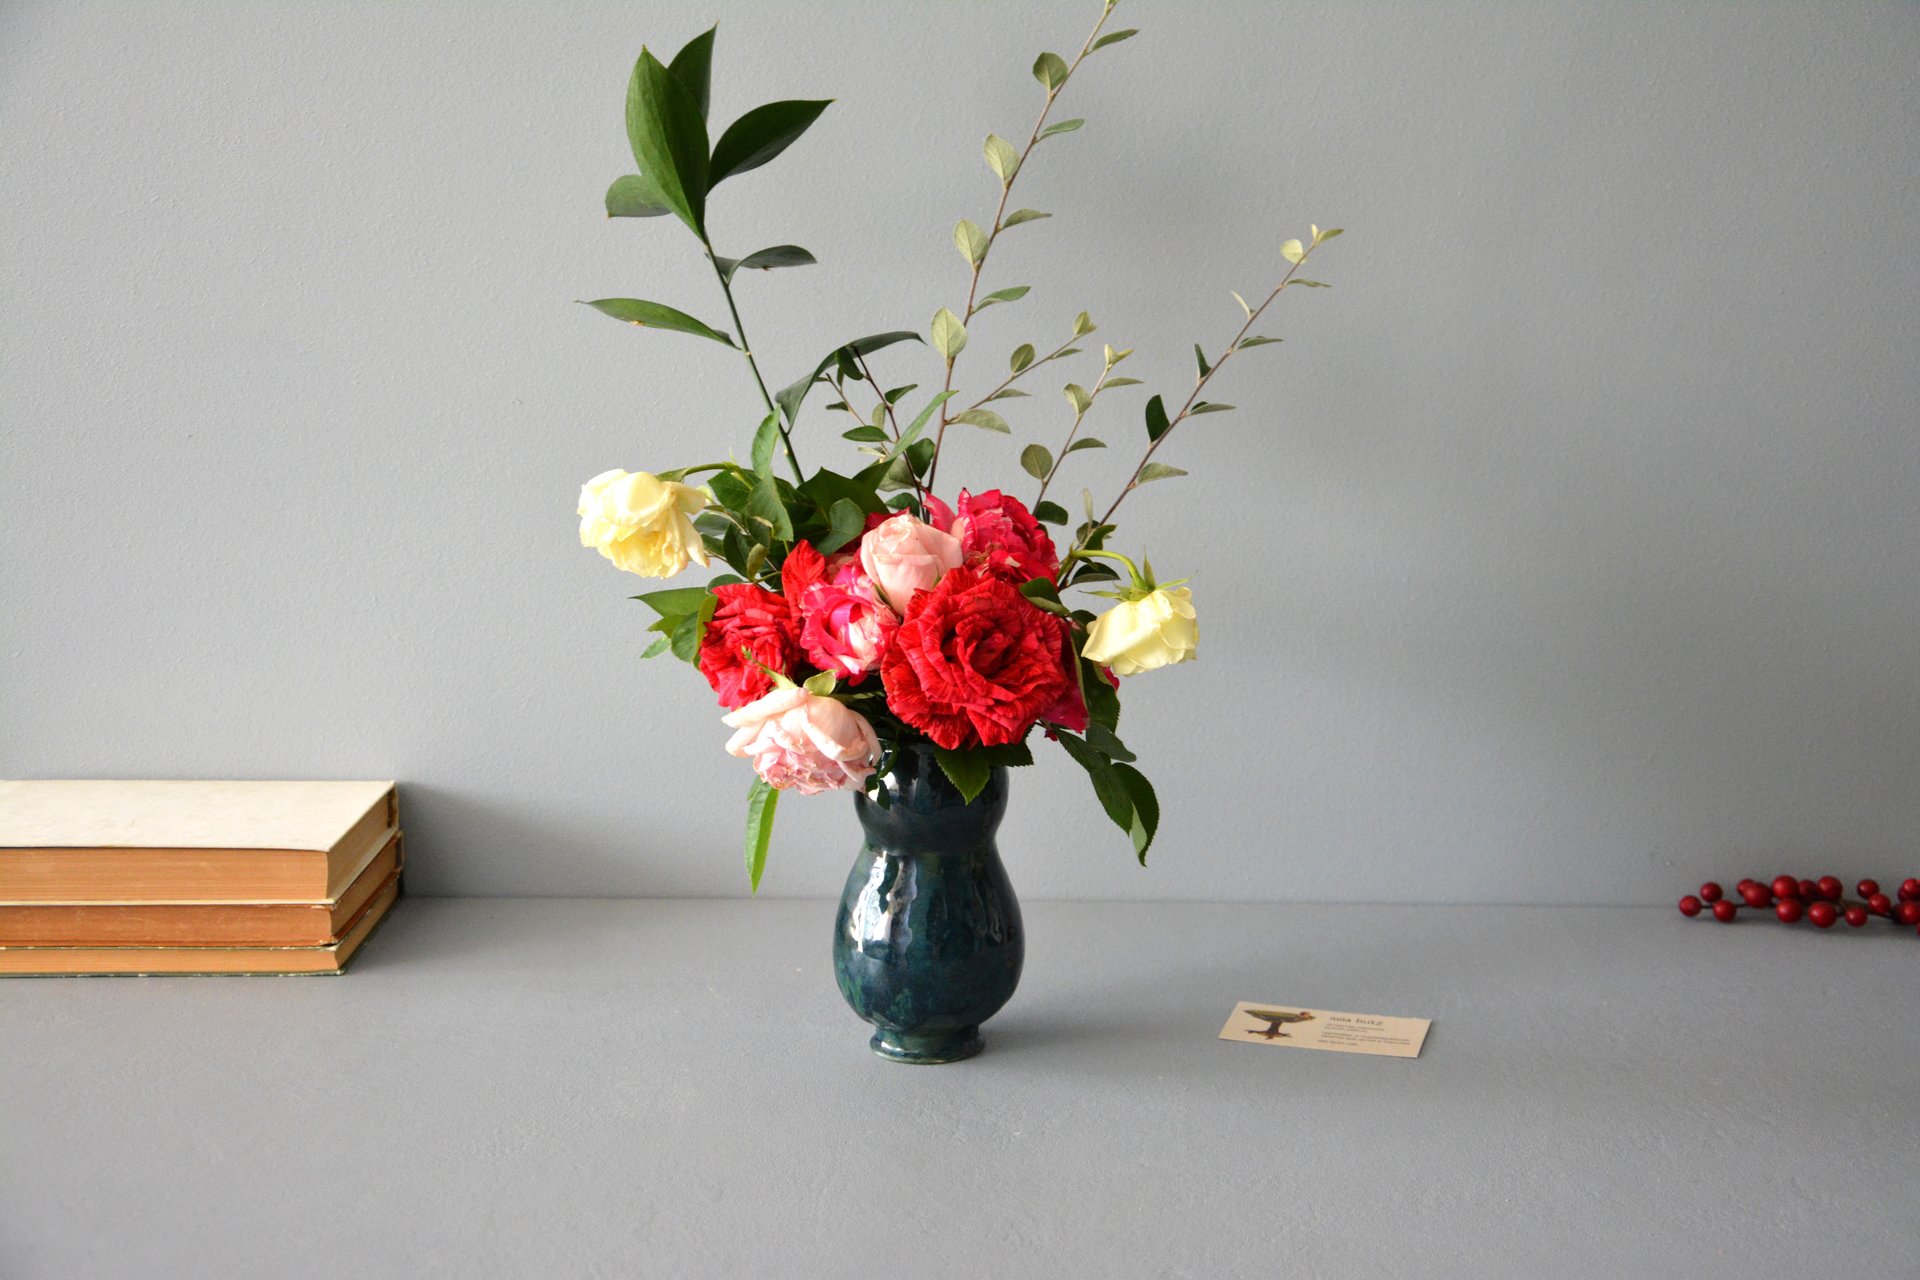 Декоративная ваза «Простые формы», высота - 15 см. Фото 1046.